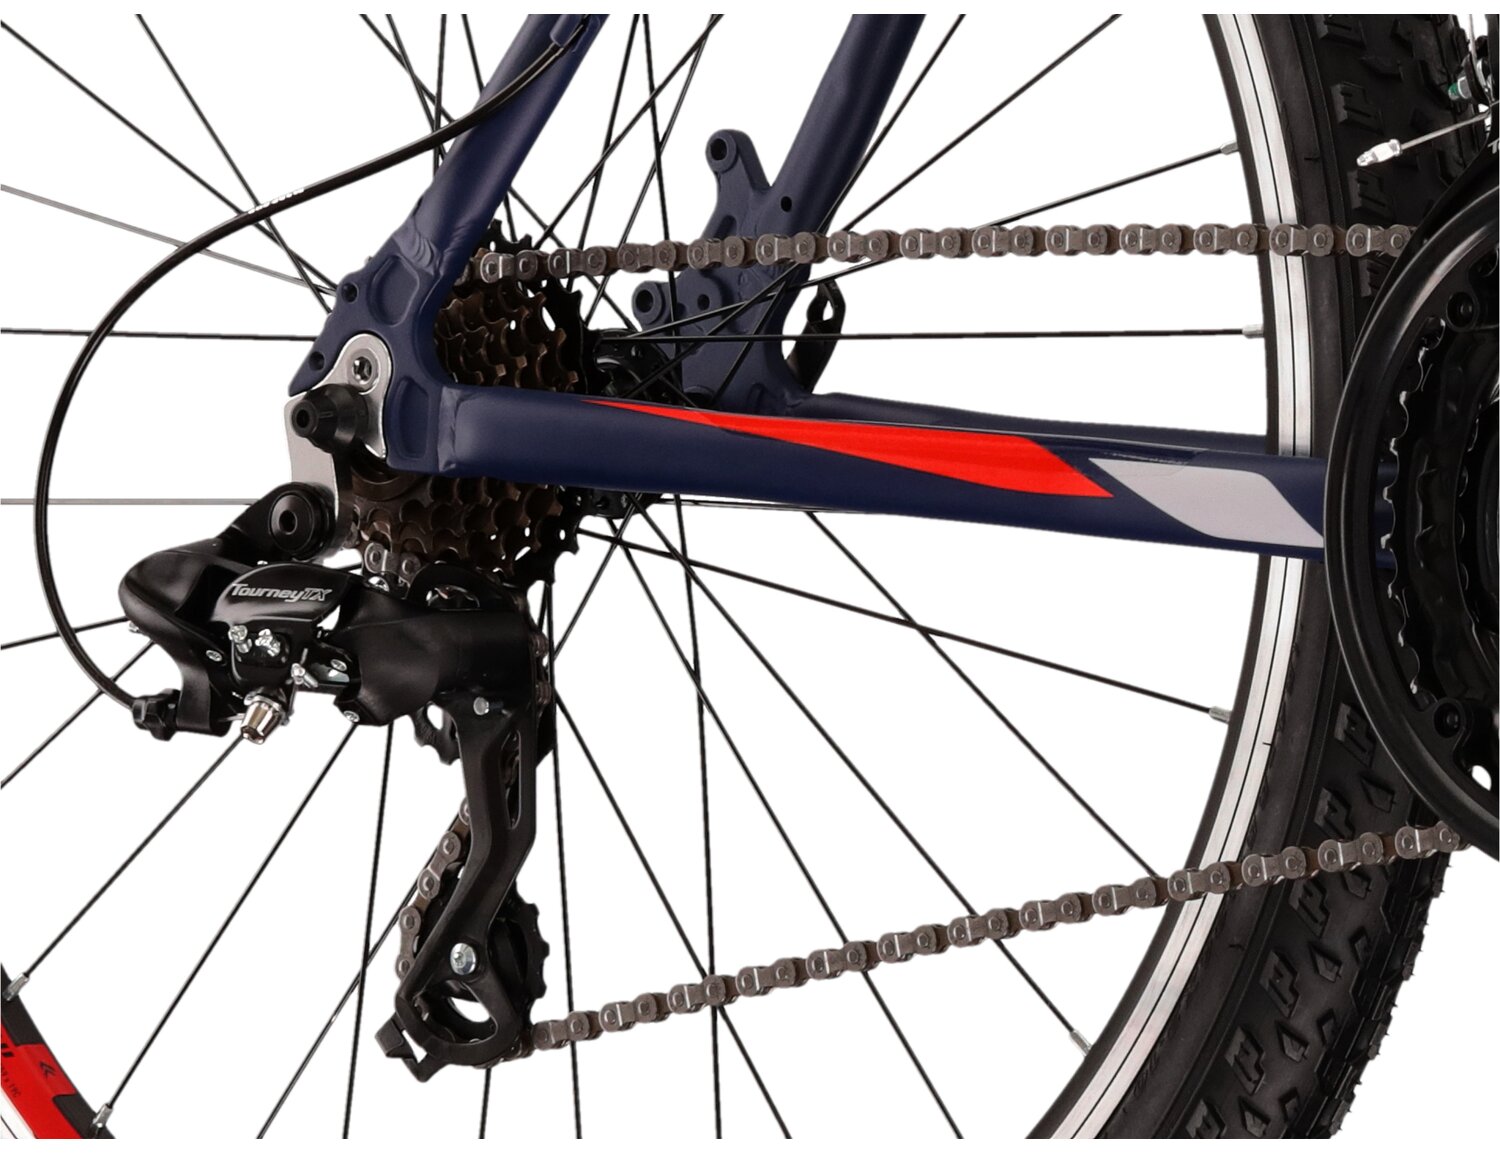  Tylna siedmiobiegowa przerzutka Shimano Tourney TX800 oraz hamulce v-brake w rowerze górskim MTB KROSS Hexagon 1.0 